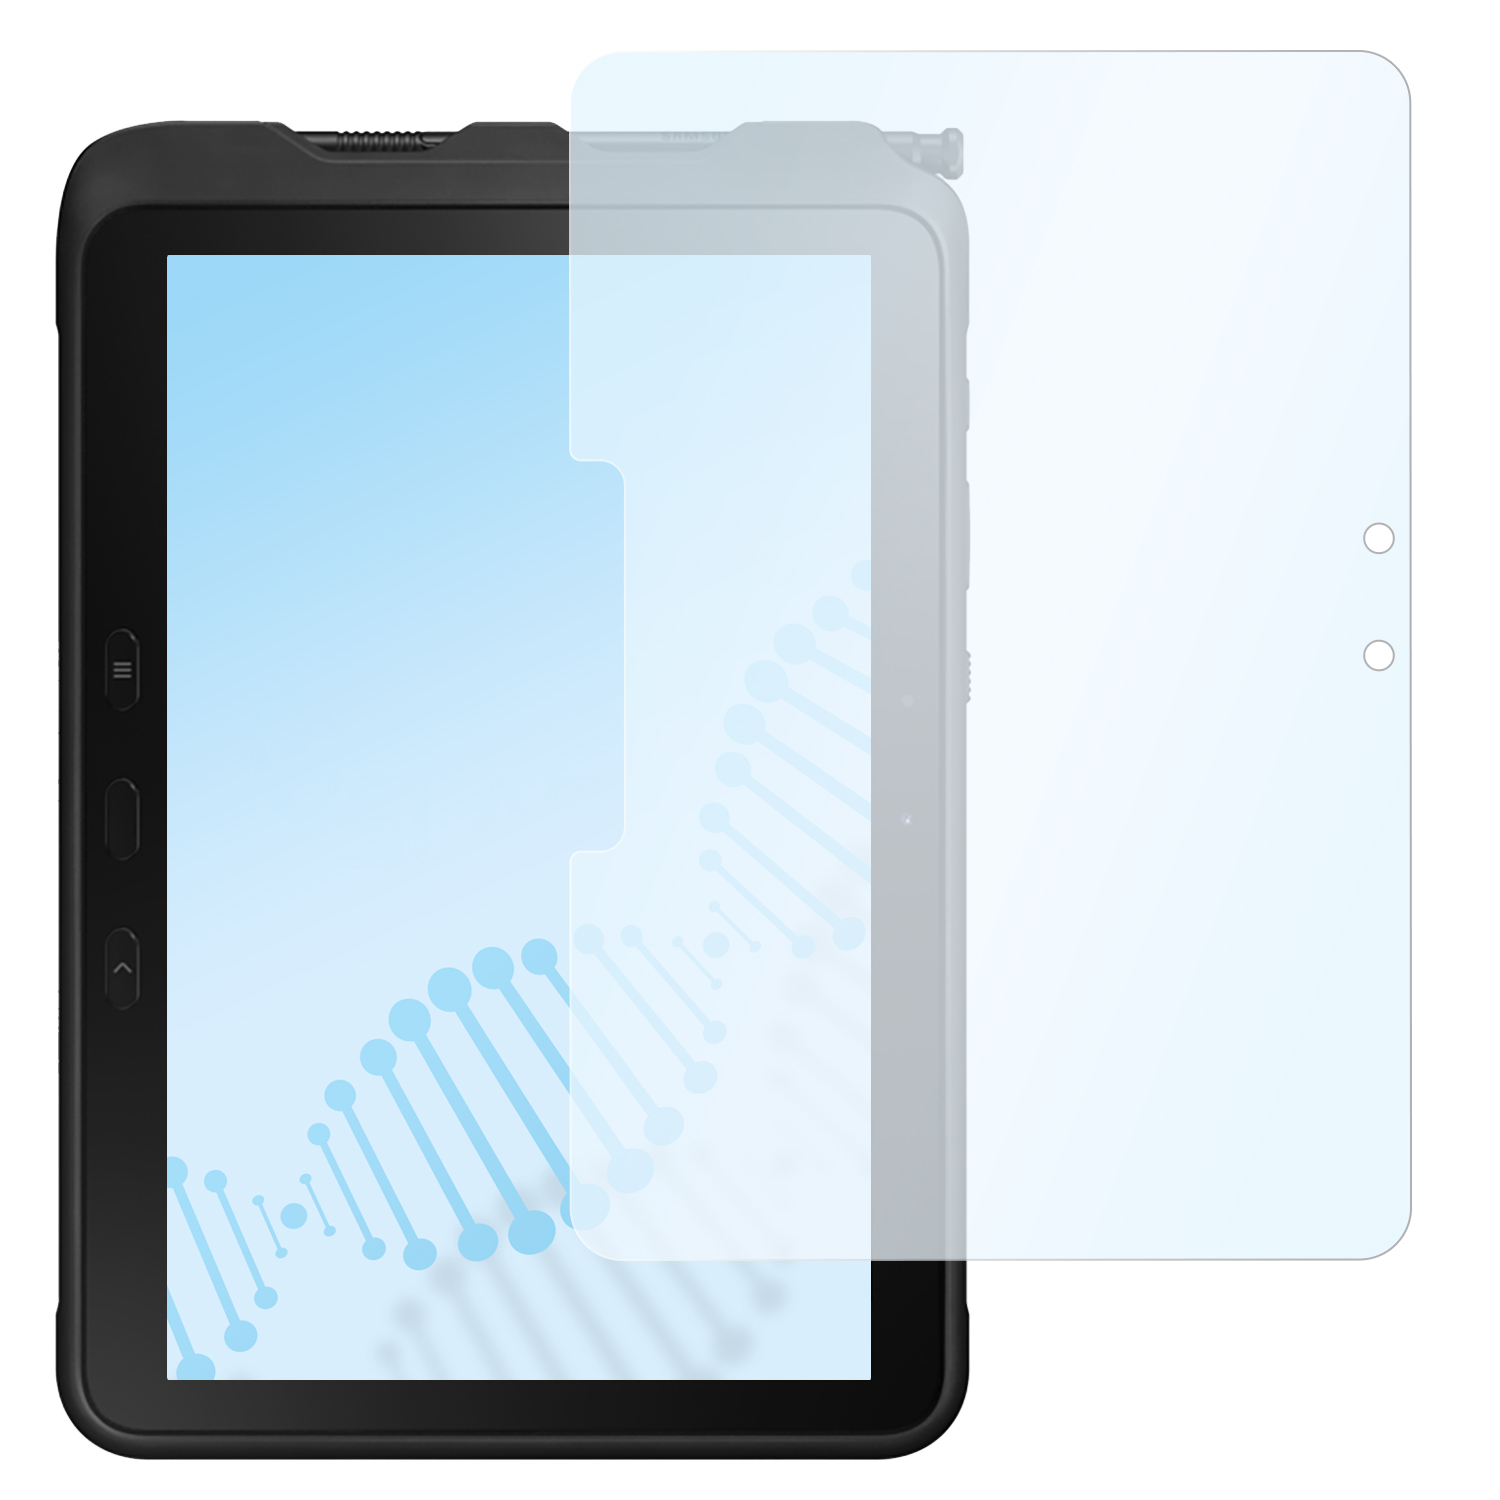 Galaxy Hybridglasfolie Active Tab Samsung SLABO | flexible antibakterielle (SM-T540 Wi-Fi) SM-T545)) Pro | Displayschutz(für (LTE